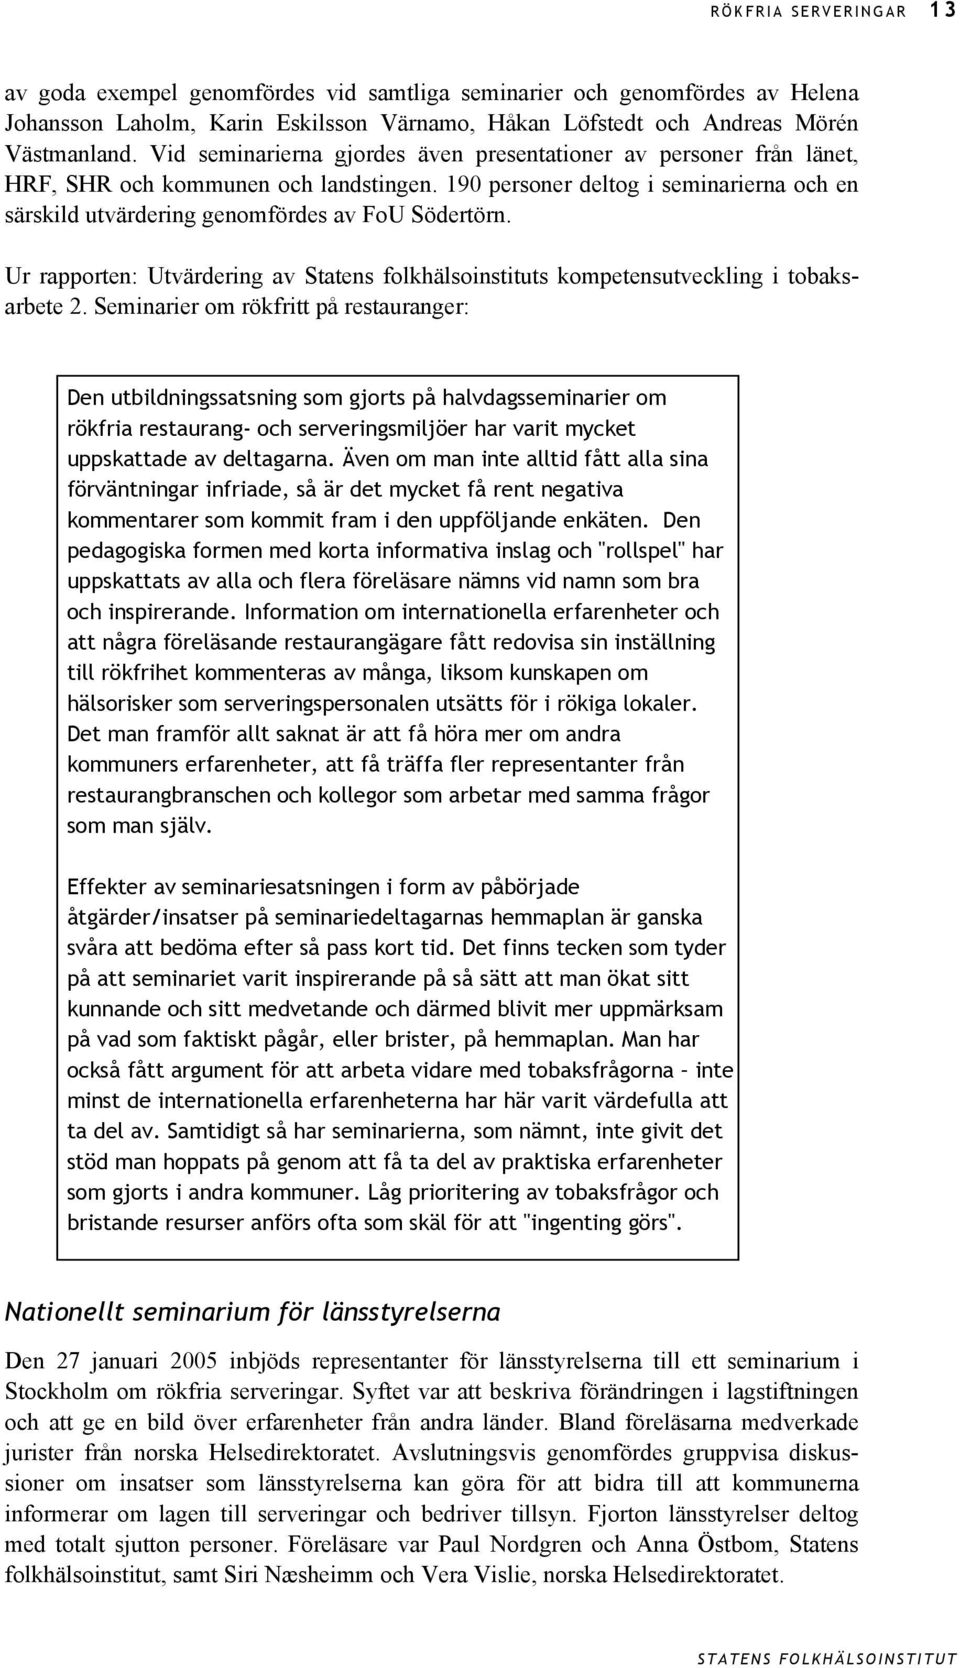 Ur rapporten: Utvärdering av Statens folkhälsoinstituts kompetensutveckling i tobaksarbete 2.